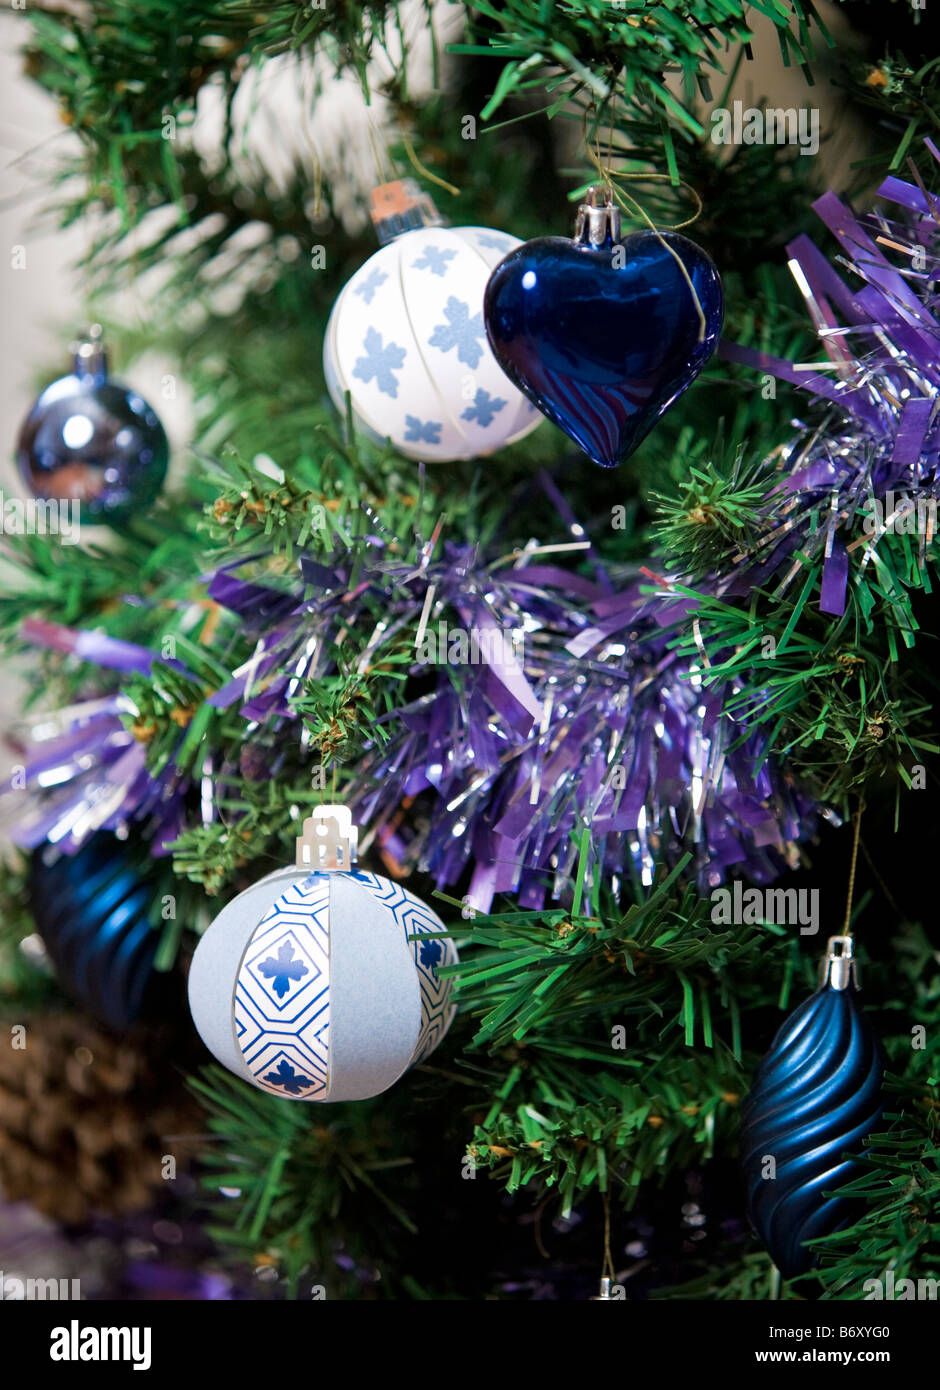 Papel metálico y adornos del árbol de navidad adornos de navidad con guirnaldas Foto de stock